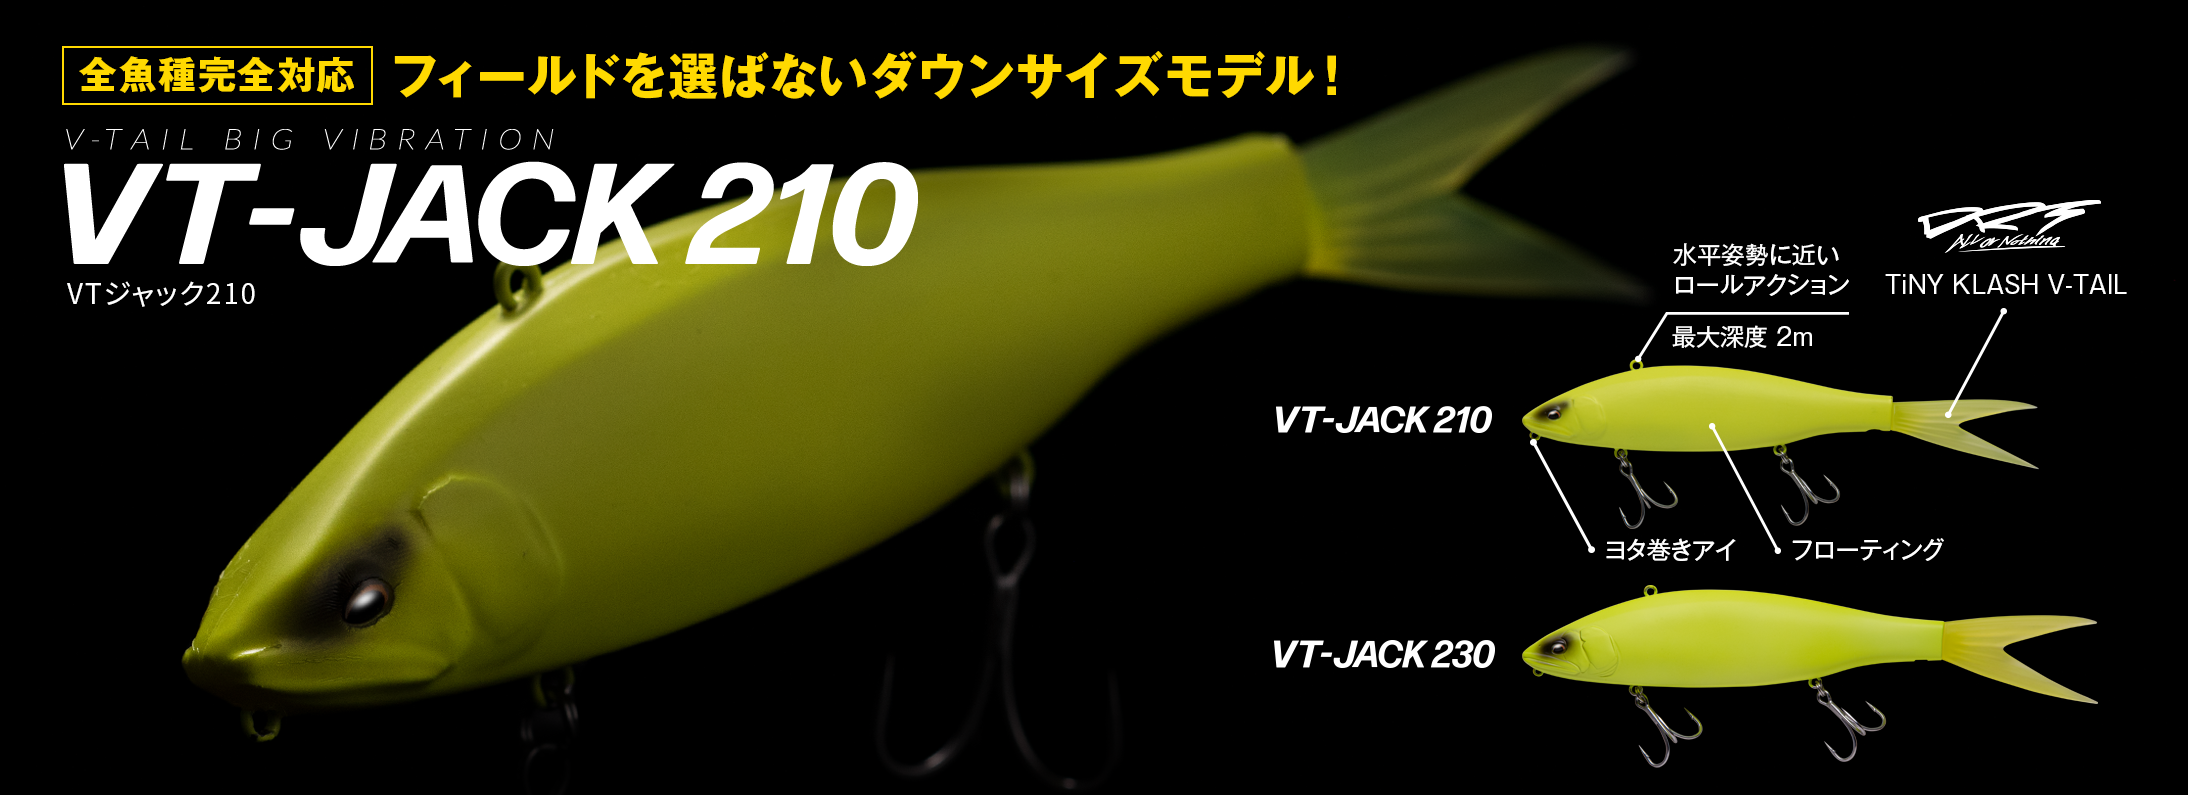 VT-VACK210